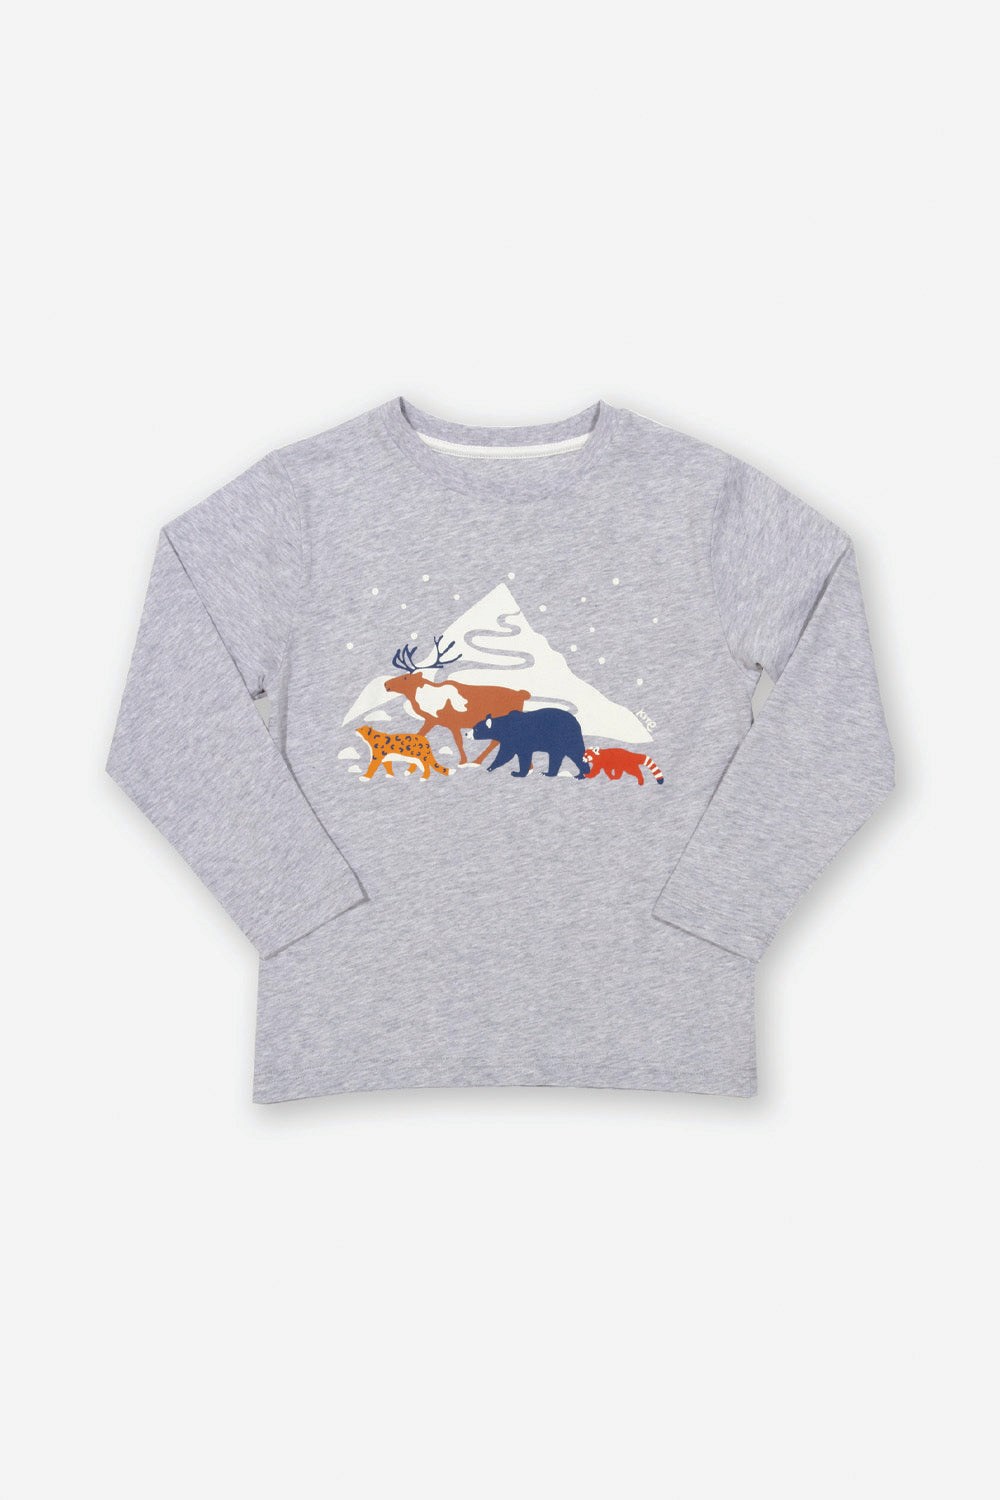 Kids Mountain Mates T-Shirt -